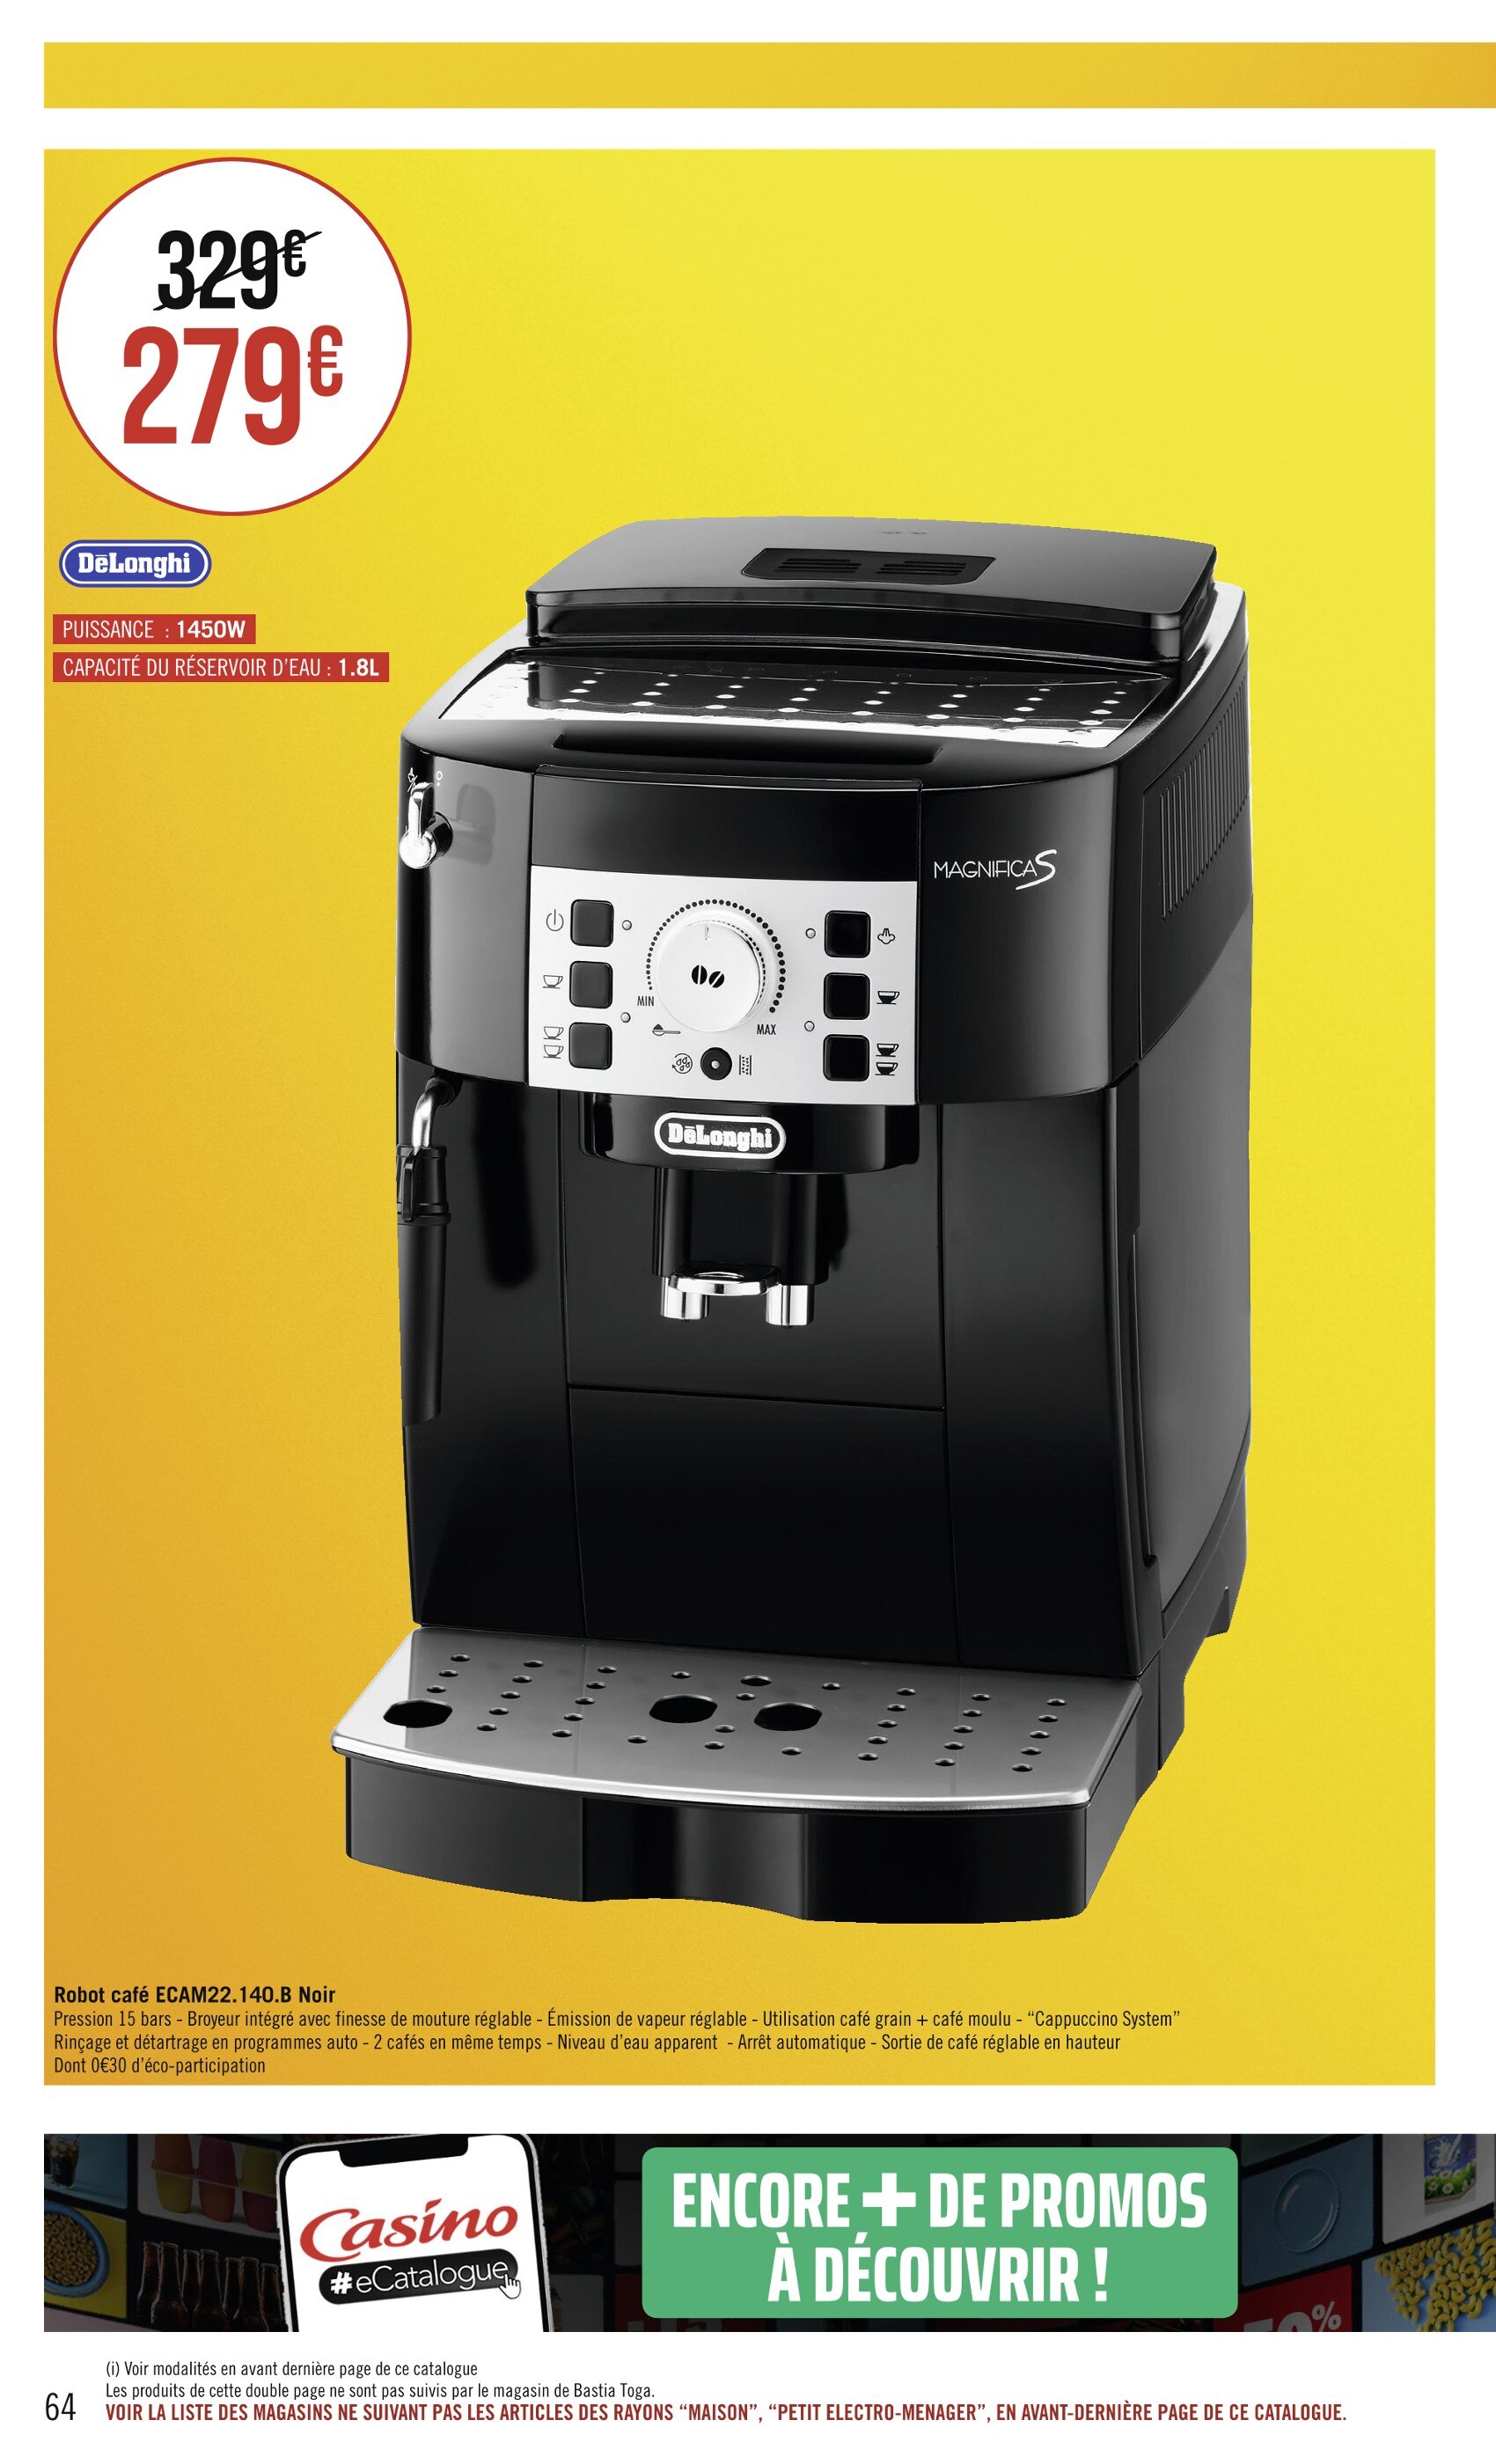 Une remise de 189 € sur la machine à café broyeur Magnifica S De'Longhi !